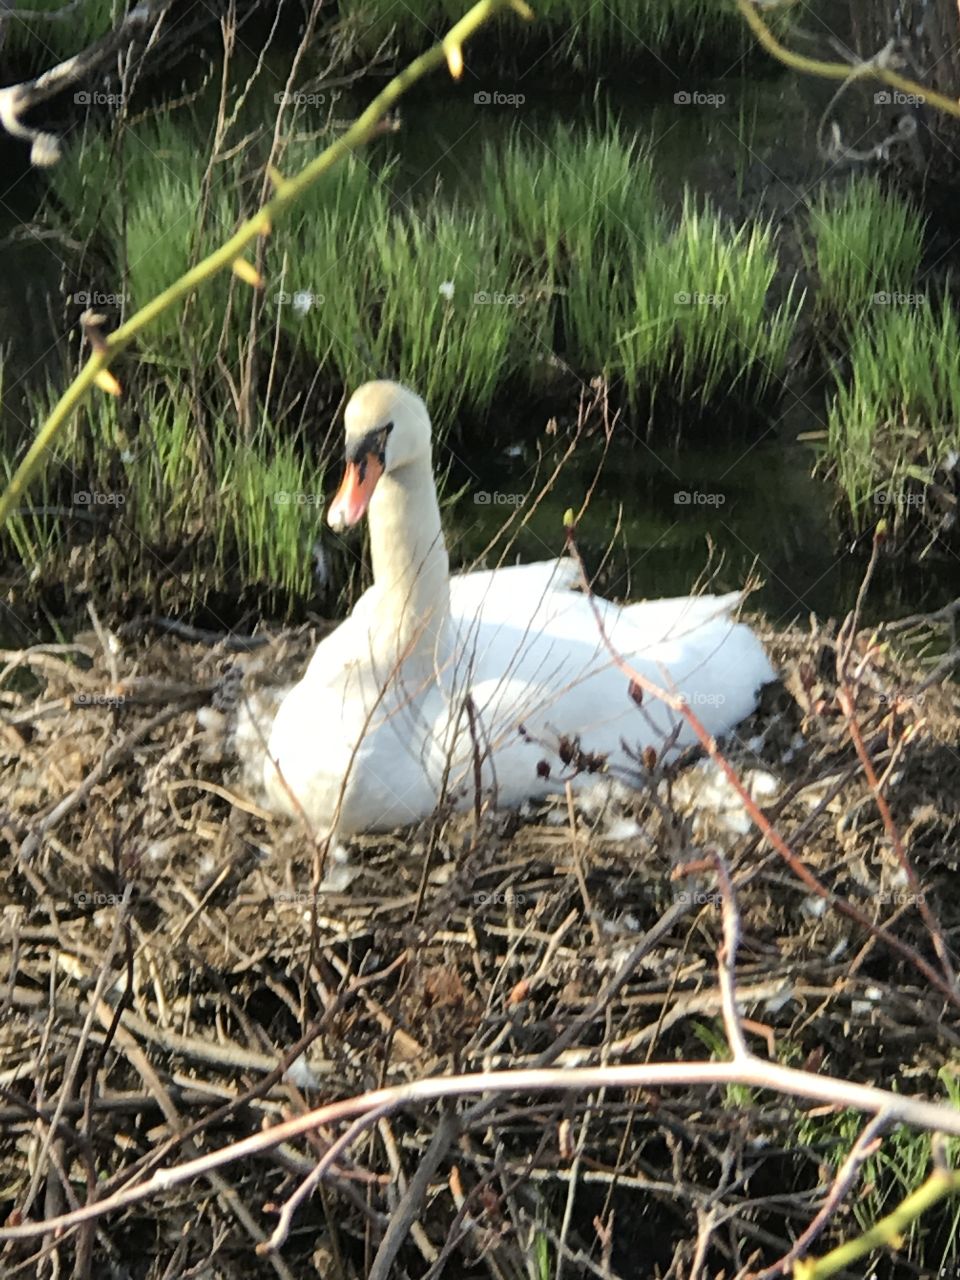 Mother Swan in her nest